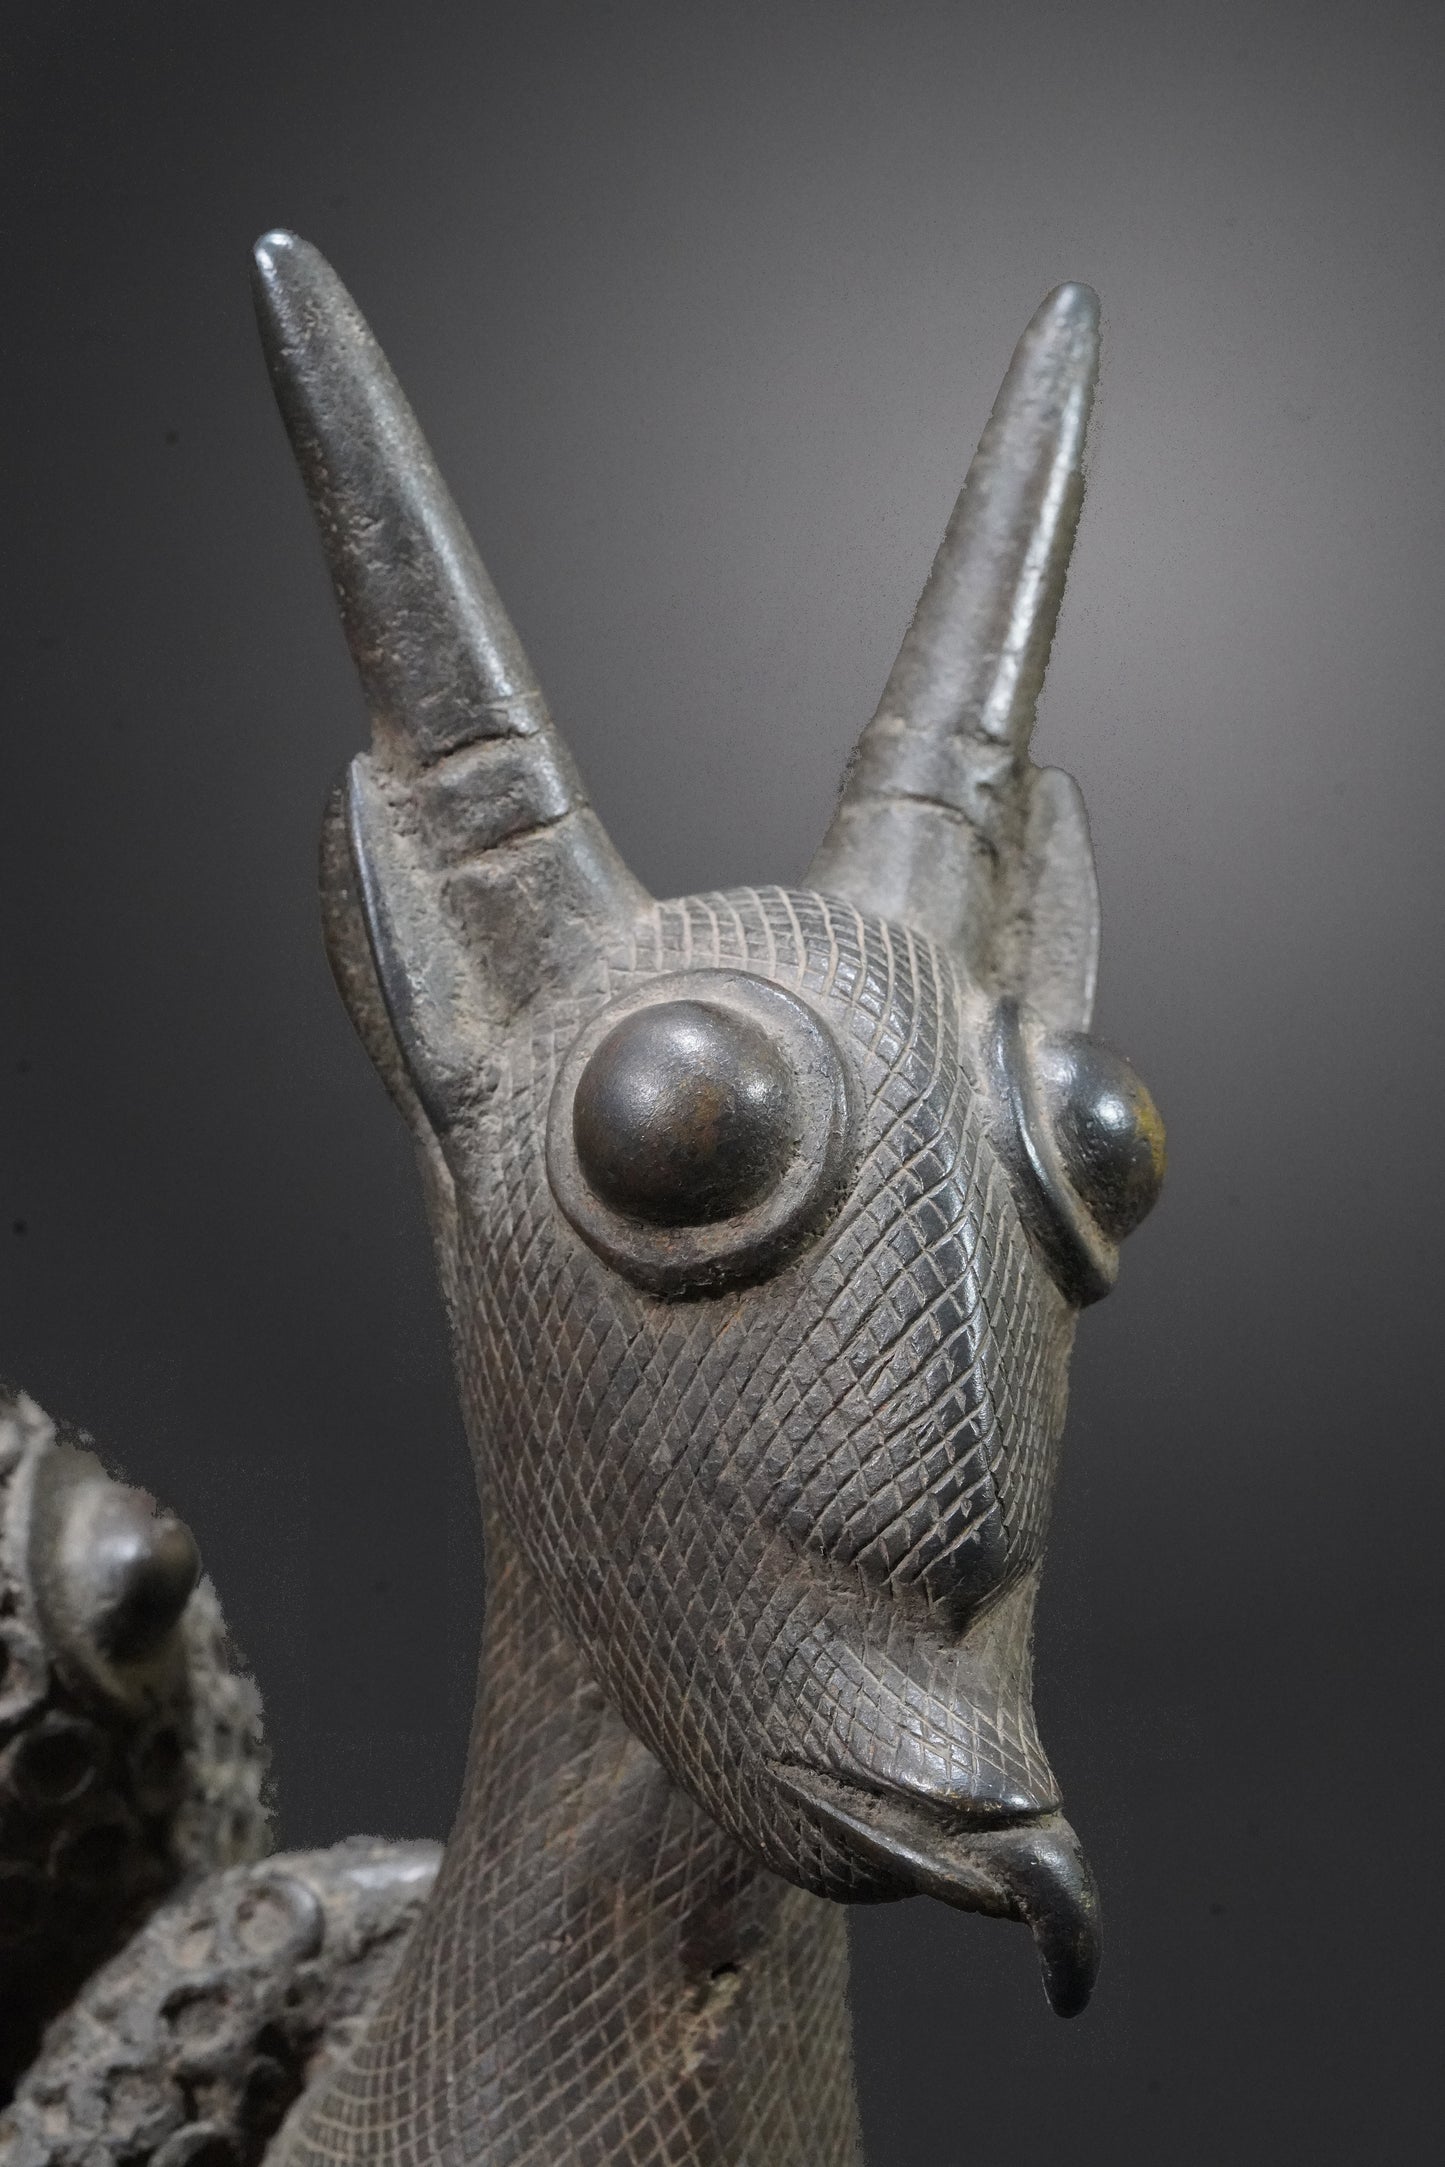 A Benin animal bronze, "A panther hunts an antelope"